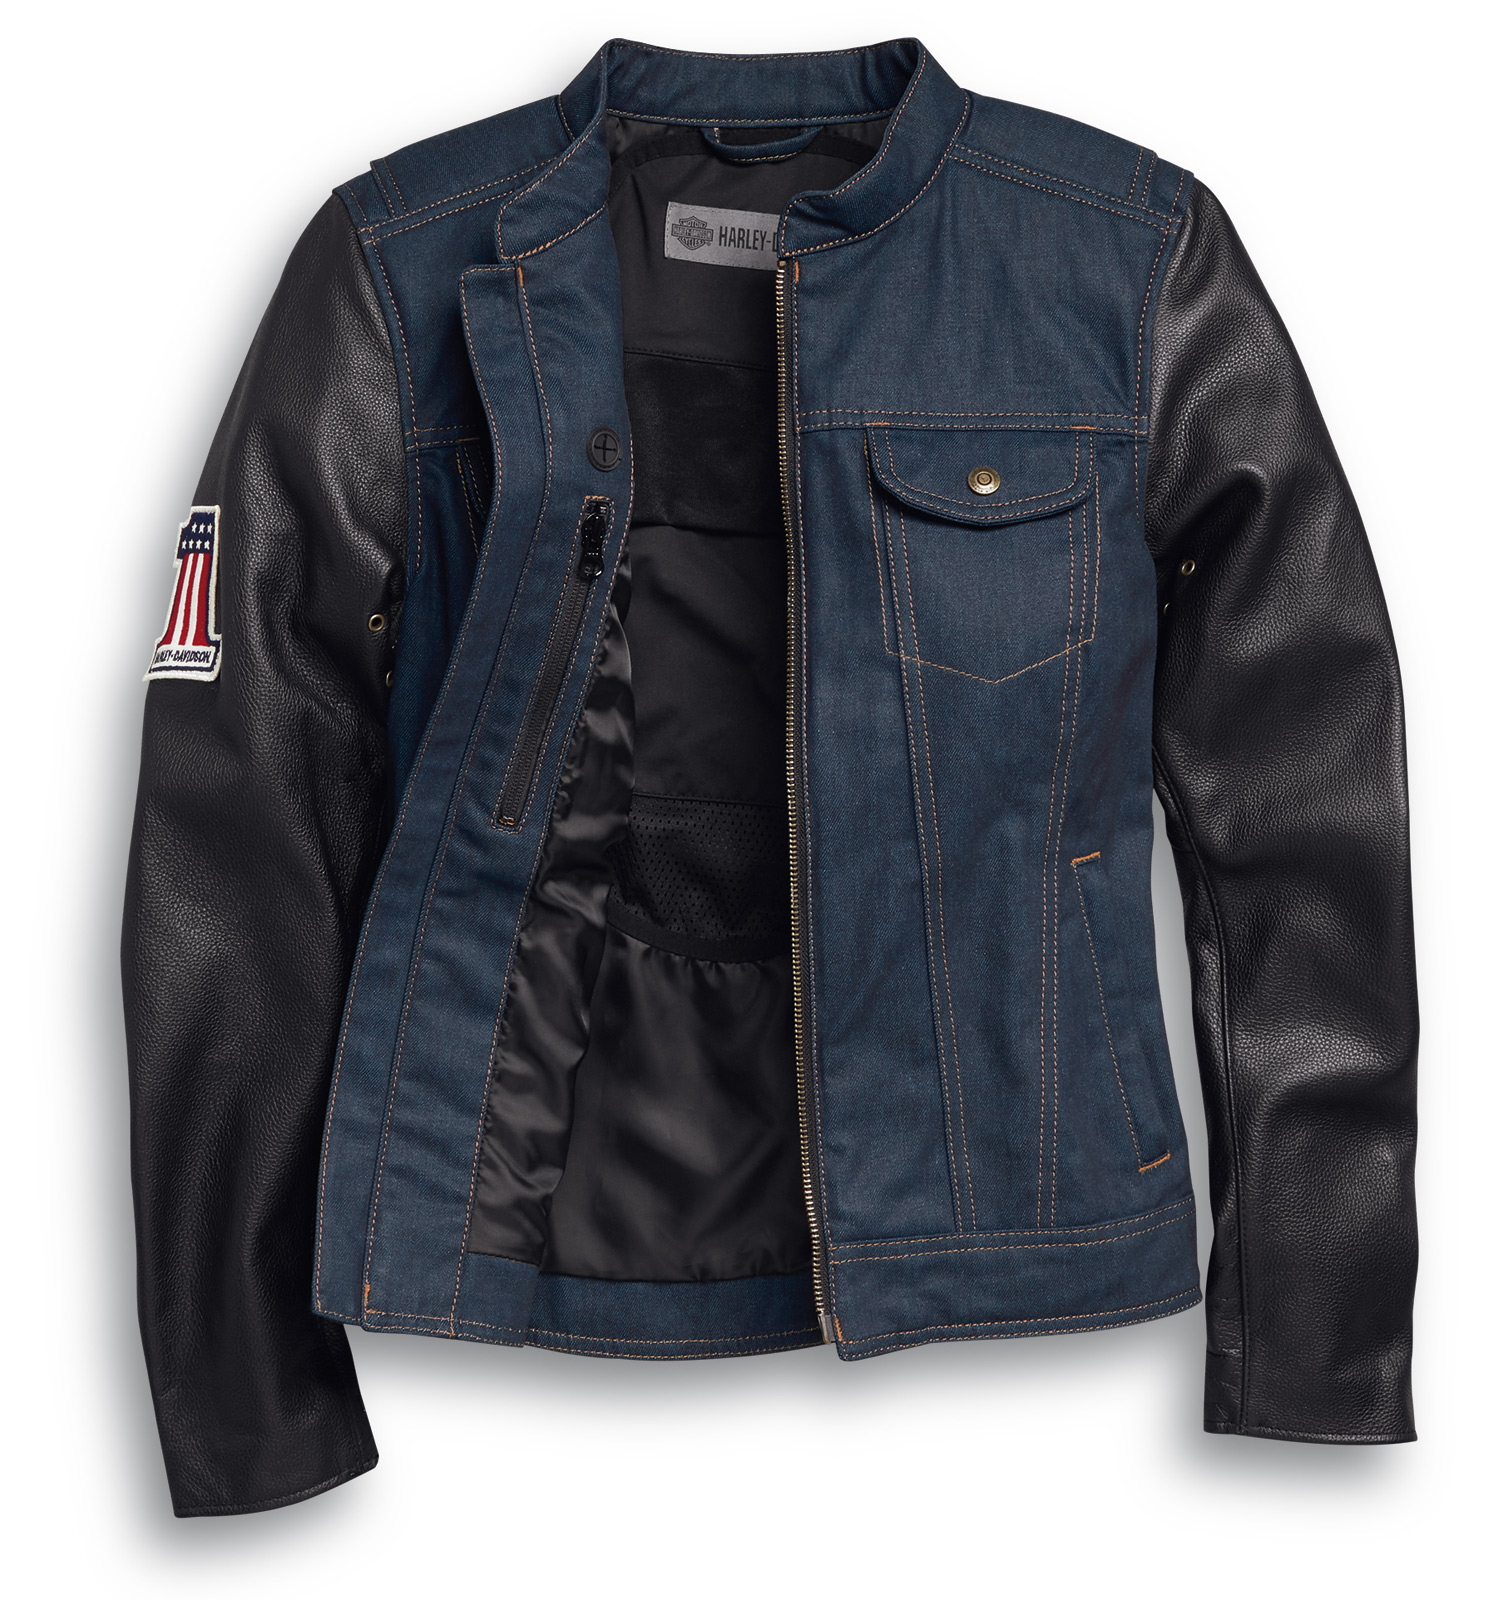 98122 20em Harley Davidson Arterial Denim Riding Jacket At Thunderbike Shop